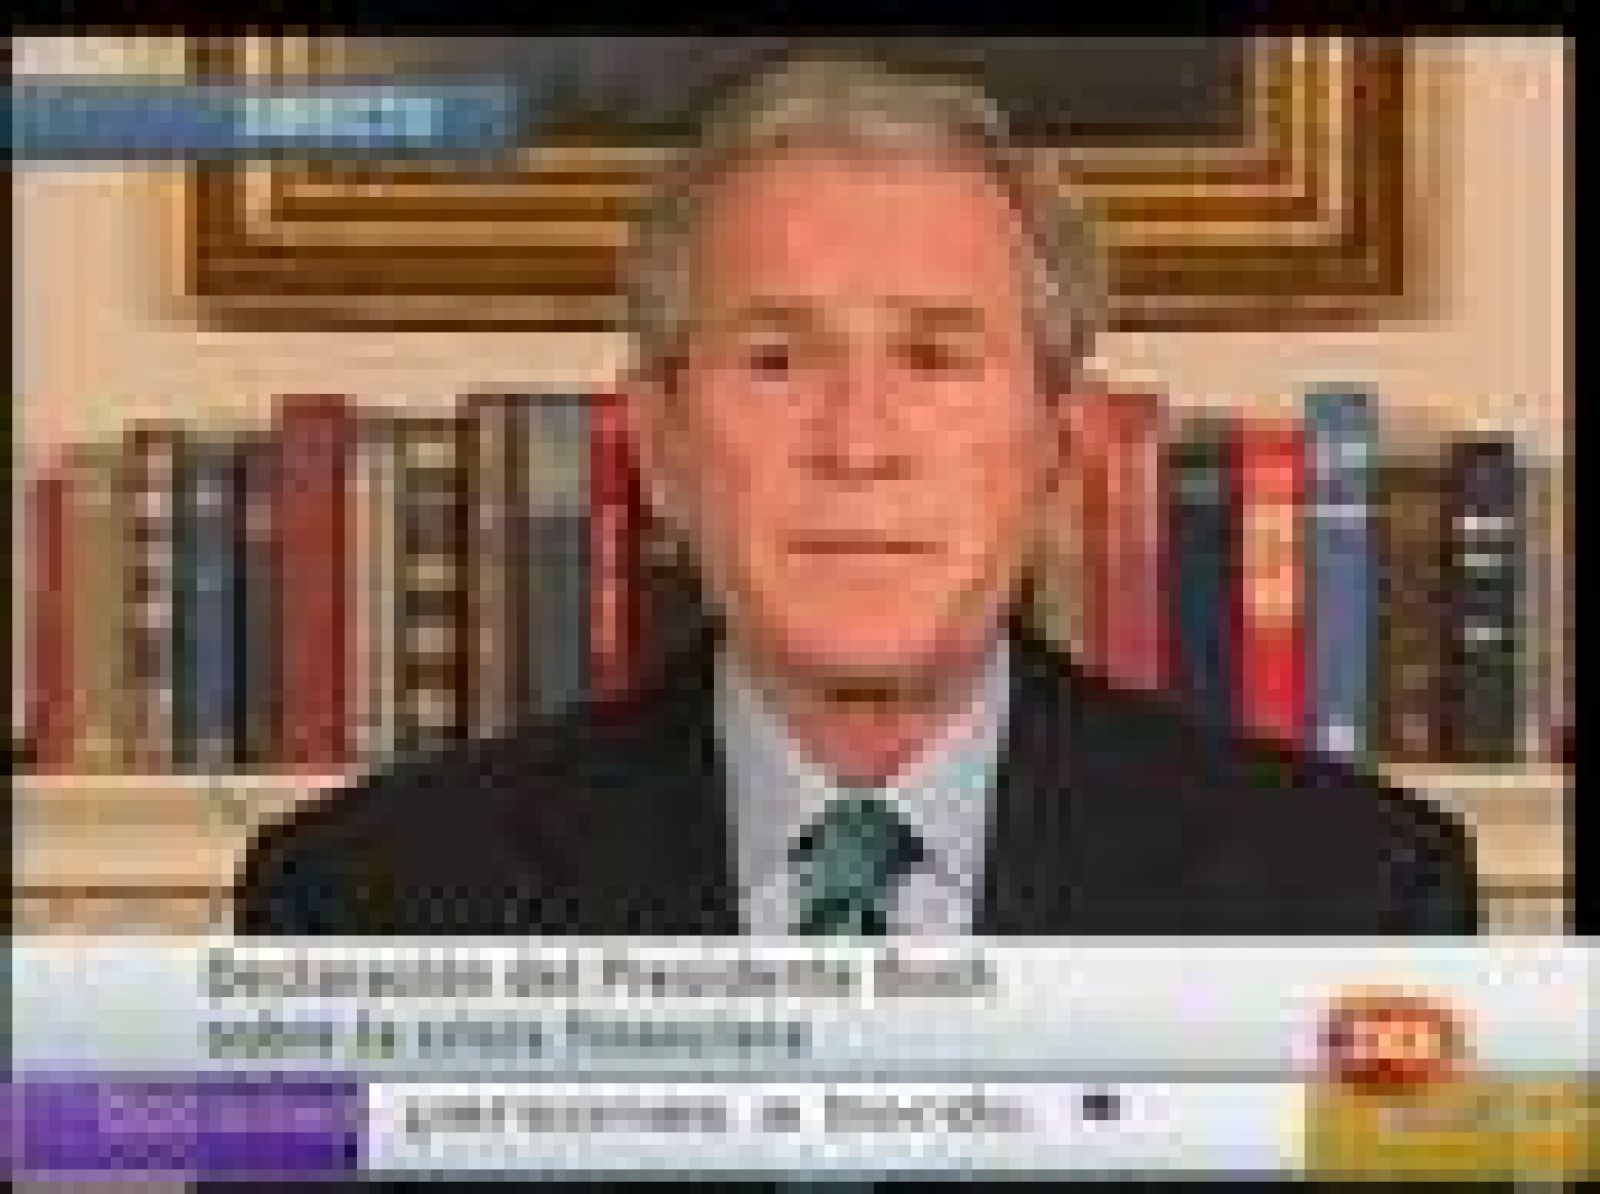 En una breve alocución pronunciada en la Casa Blanca, Bush ha instado al Congreso a alcanzar un acuerdo porque "estamos en un momento crítico para nuestra economía" que requiere de una actuación "urgente".